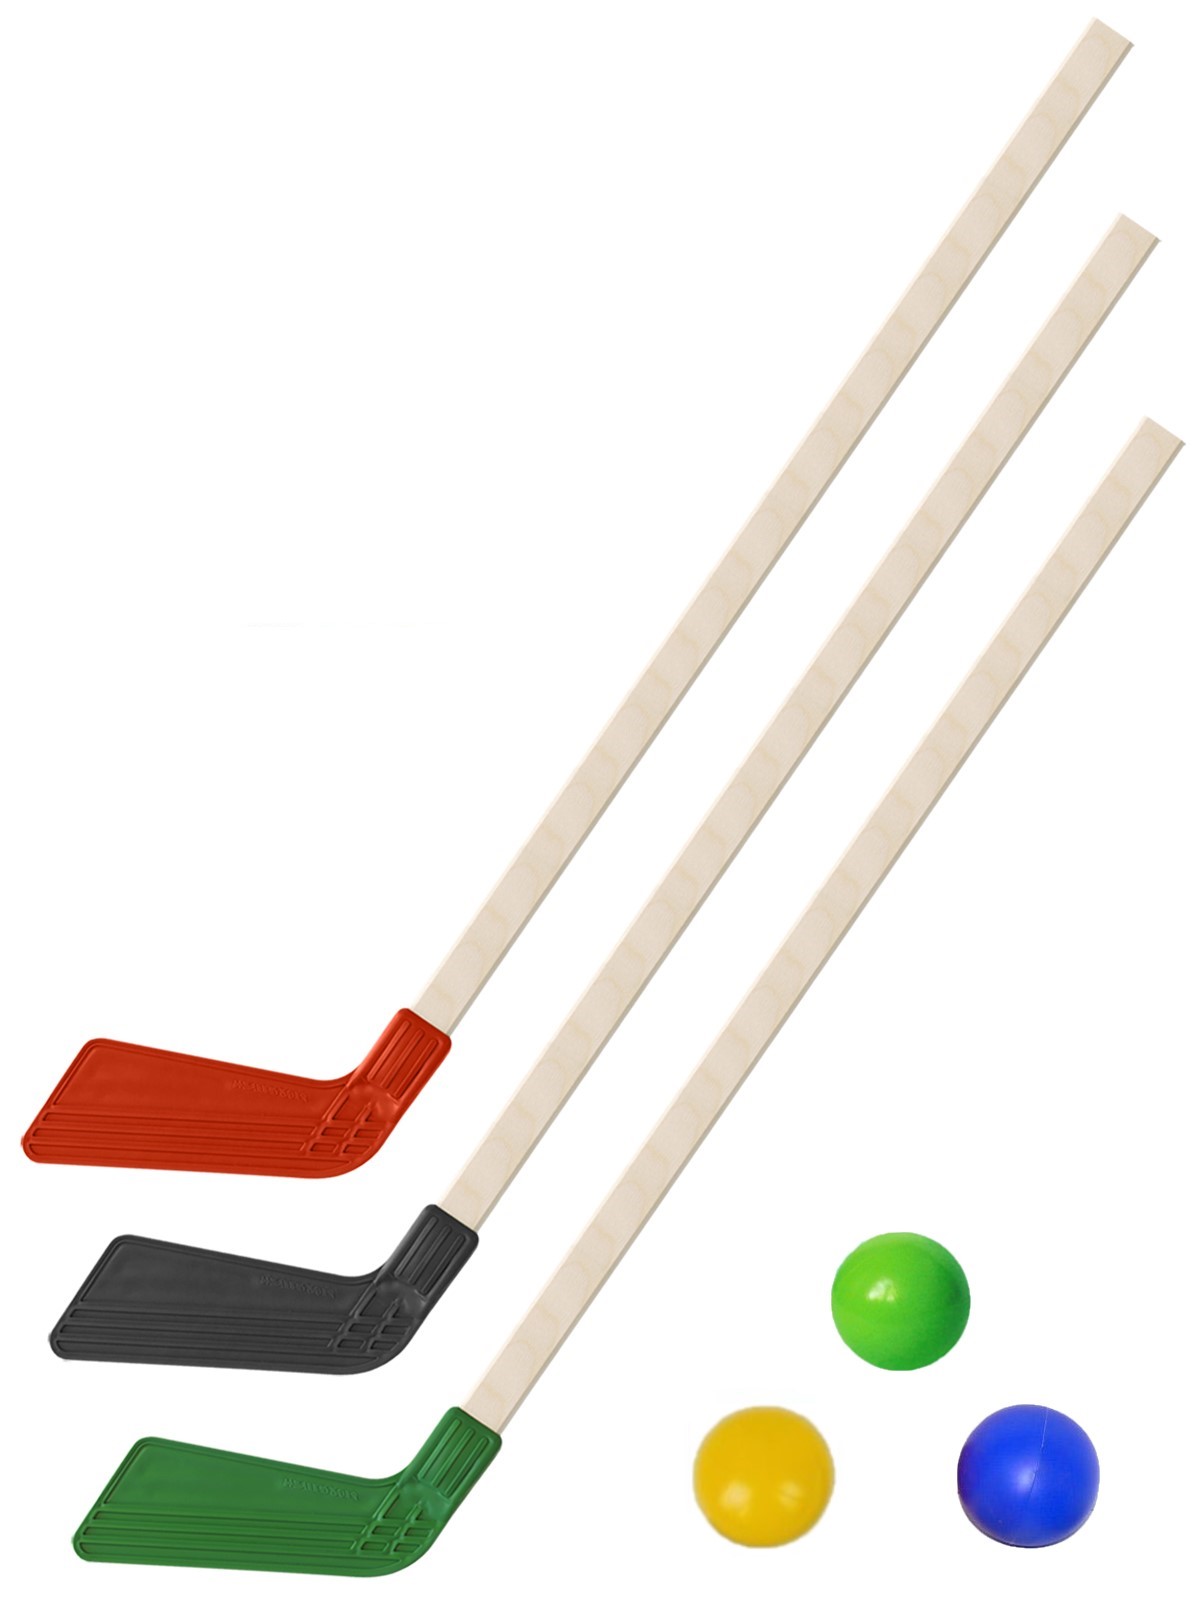 Детский хоккейный набор Задира-плюс Клюшка хоккейная детская 3шт (черн+красн+зел)+3 мяча